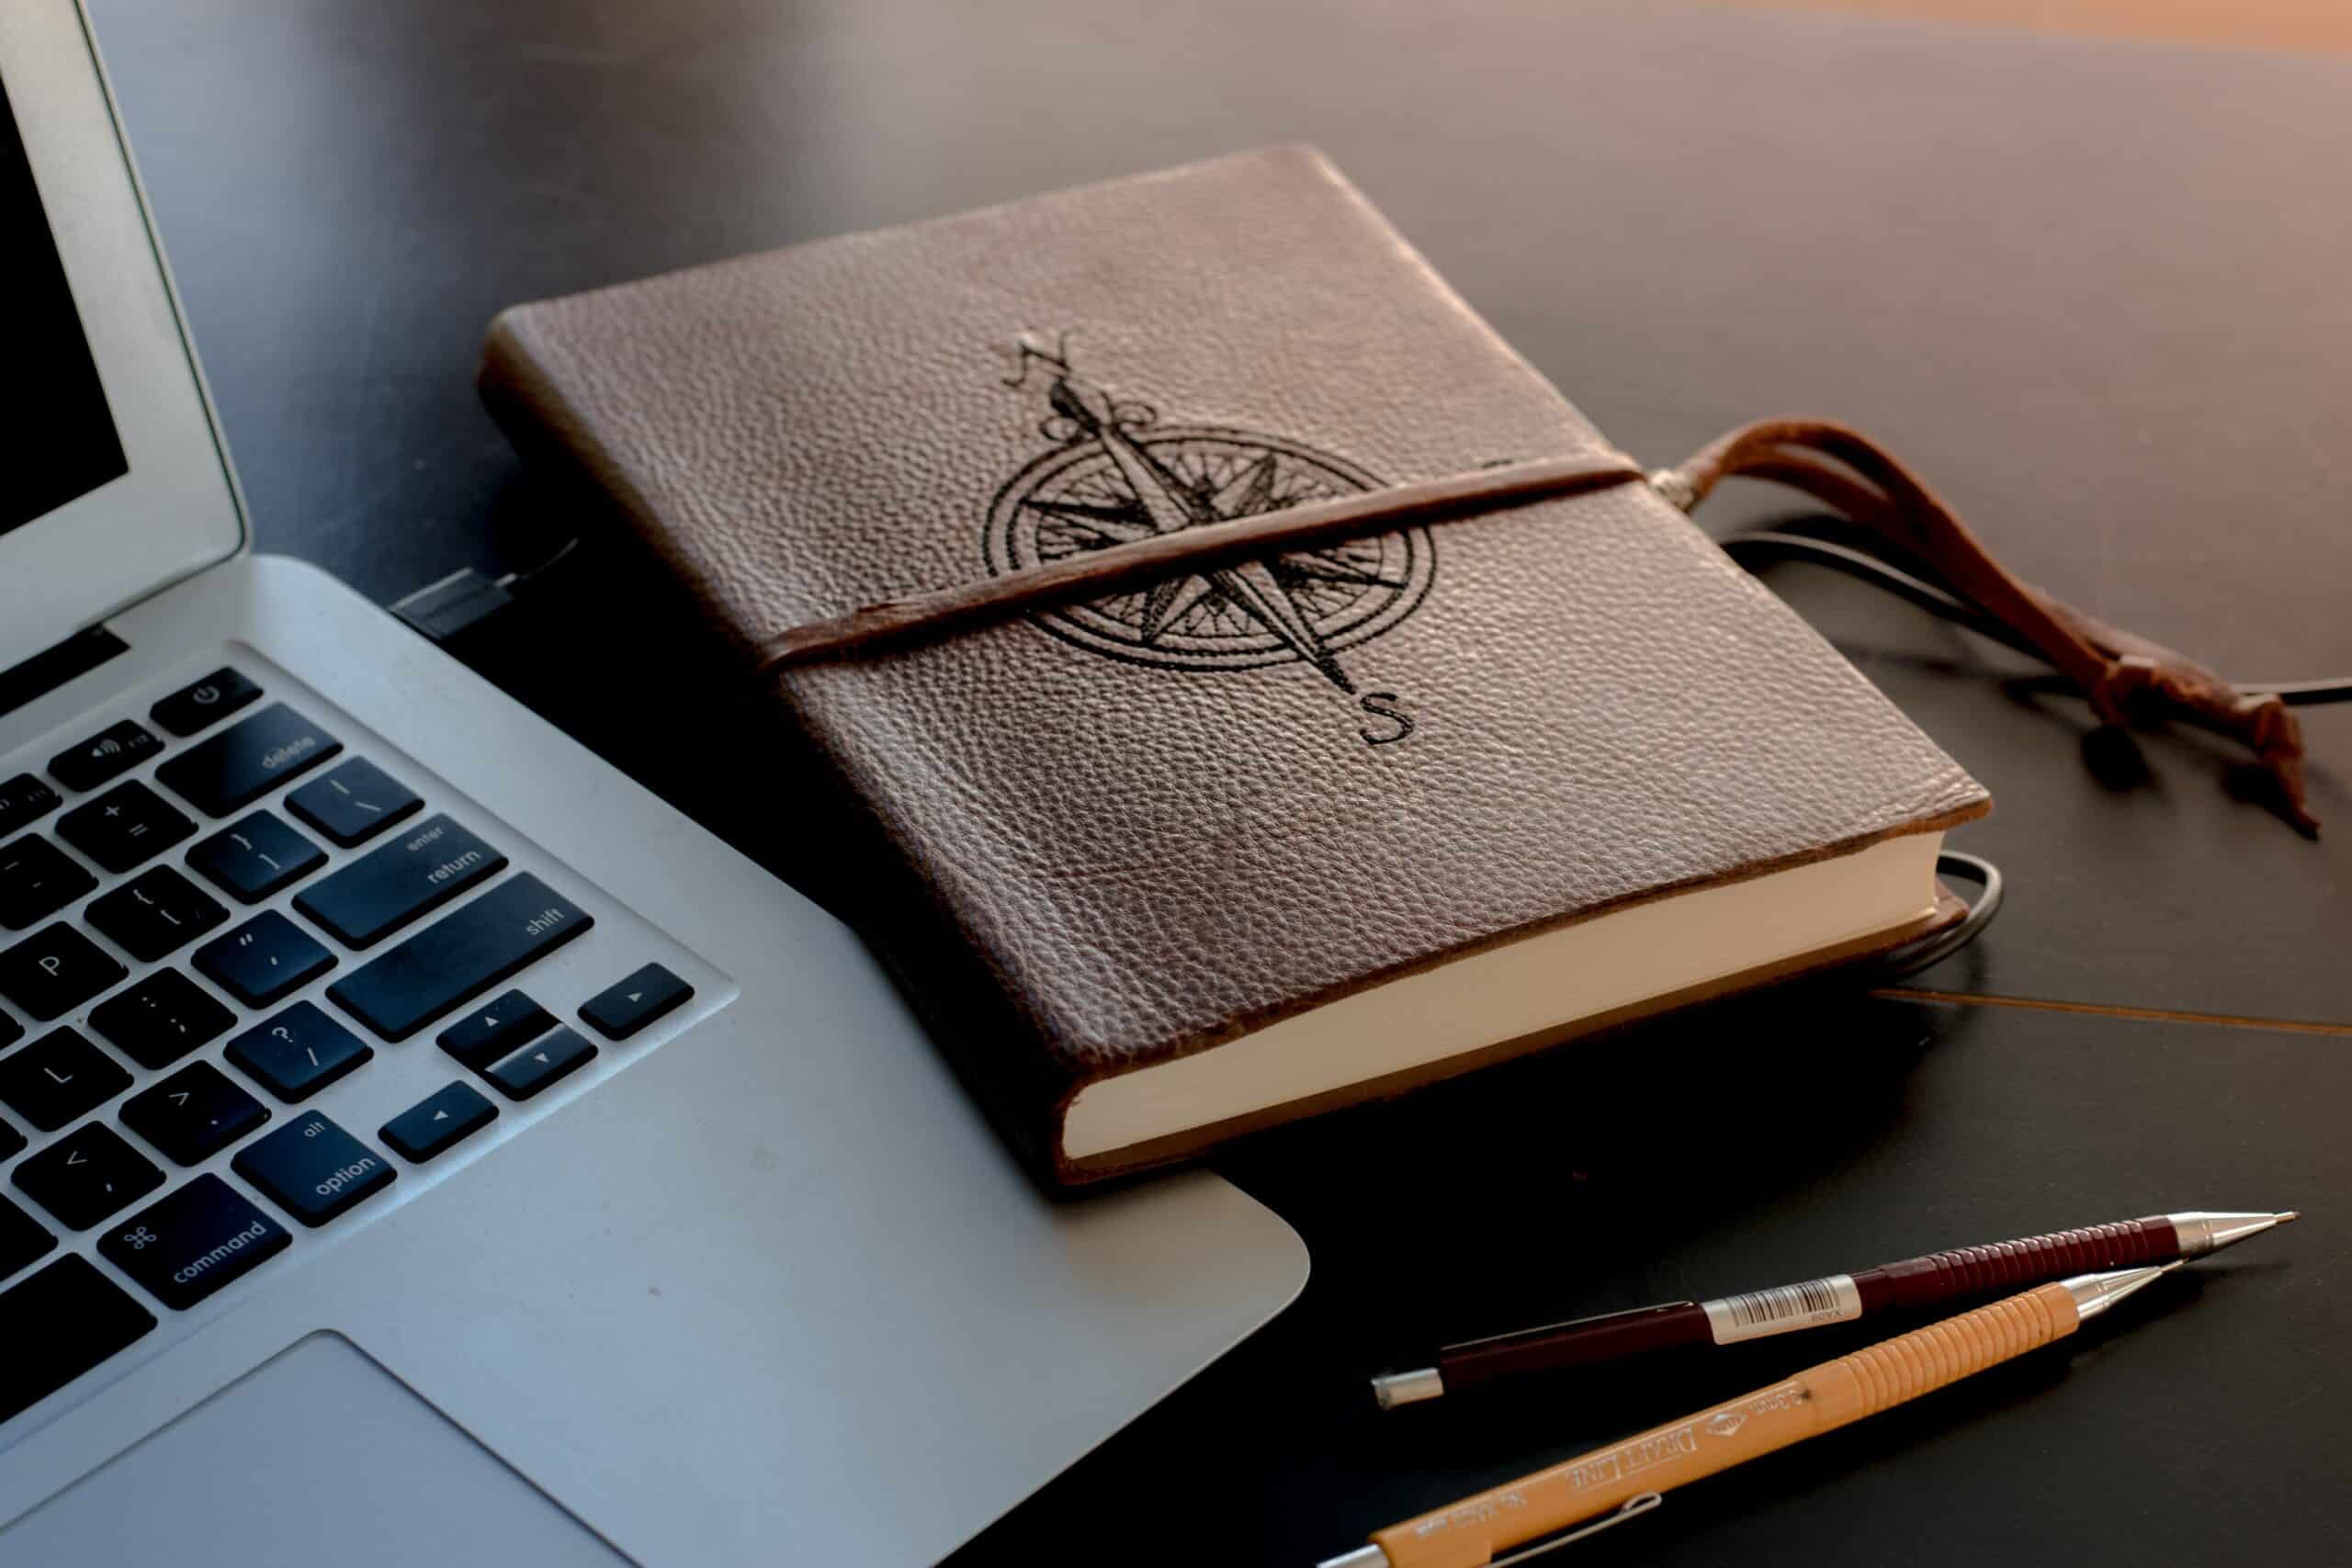 caderno de viagem ao lado de um notebook - foto tirada pelo colton sturgeon via unsplash